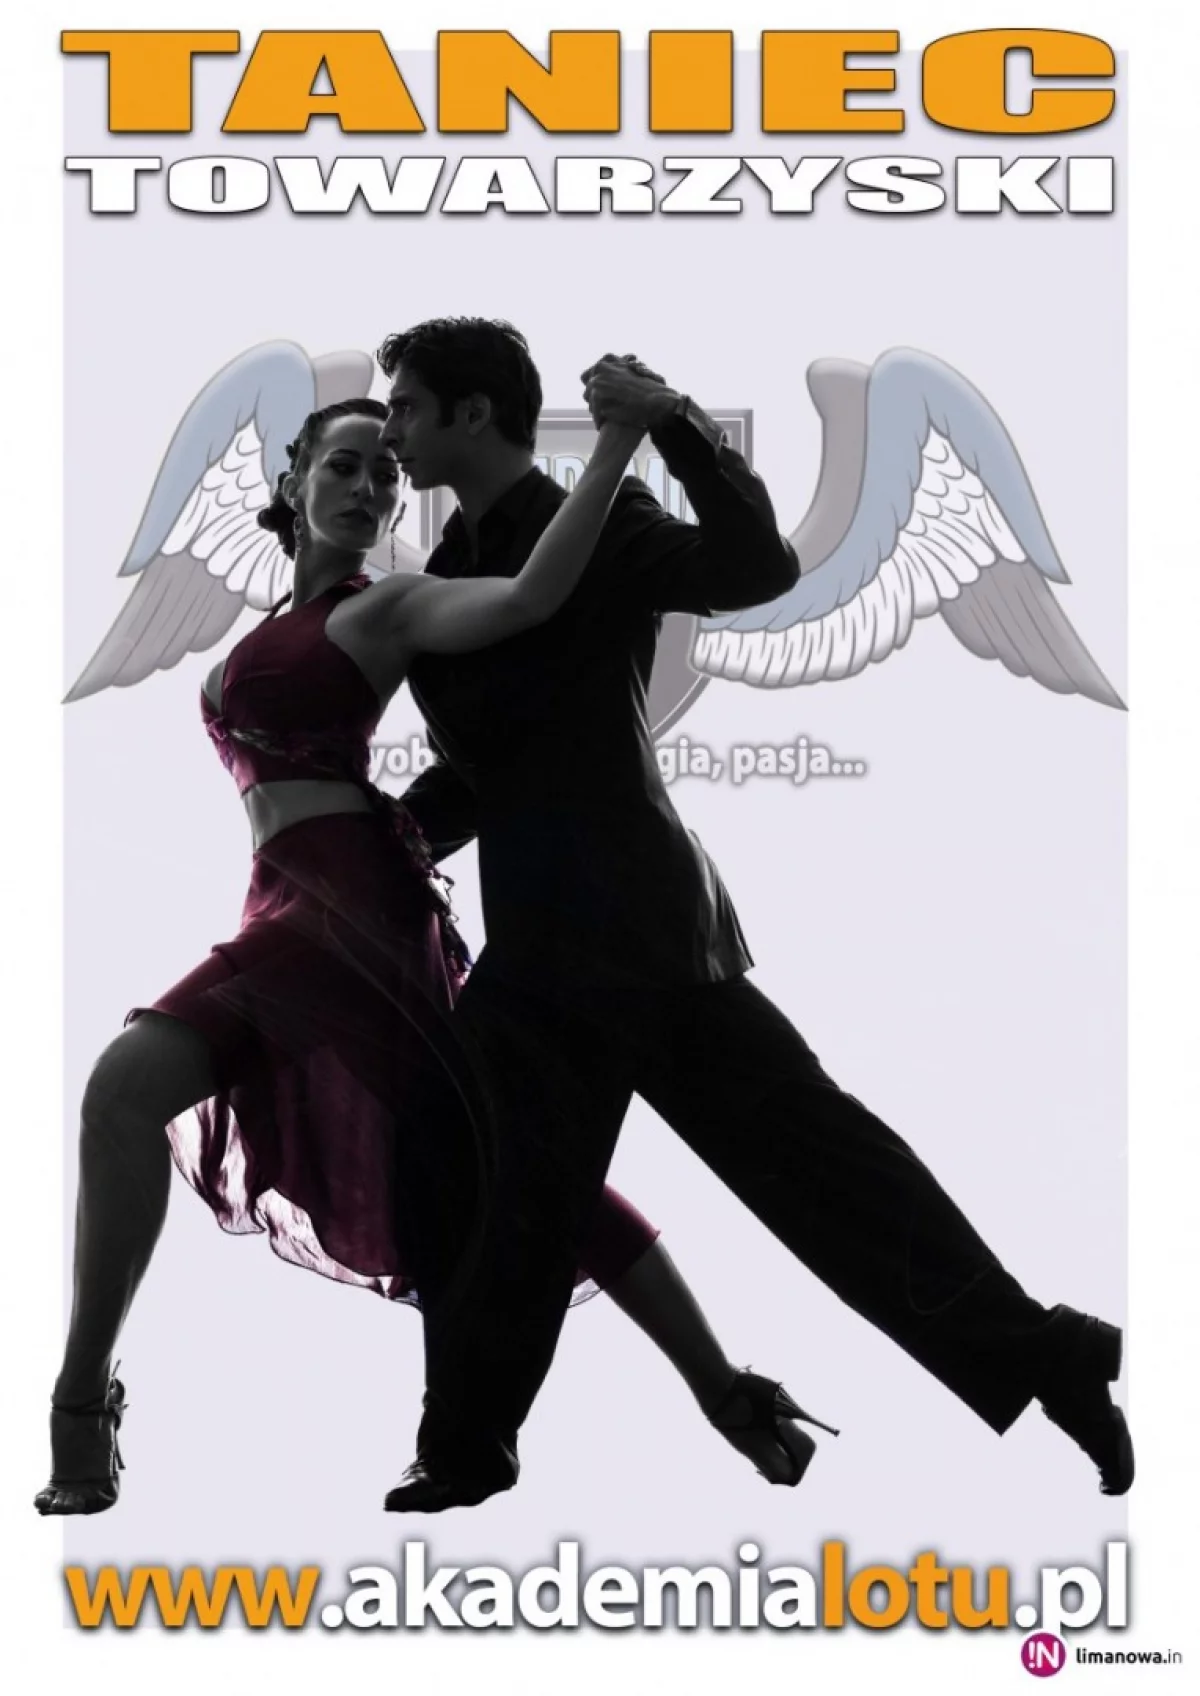 Taniec towarzyski i salsa kubańska w Akademii Lotu